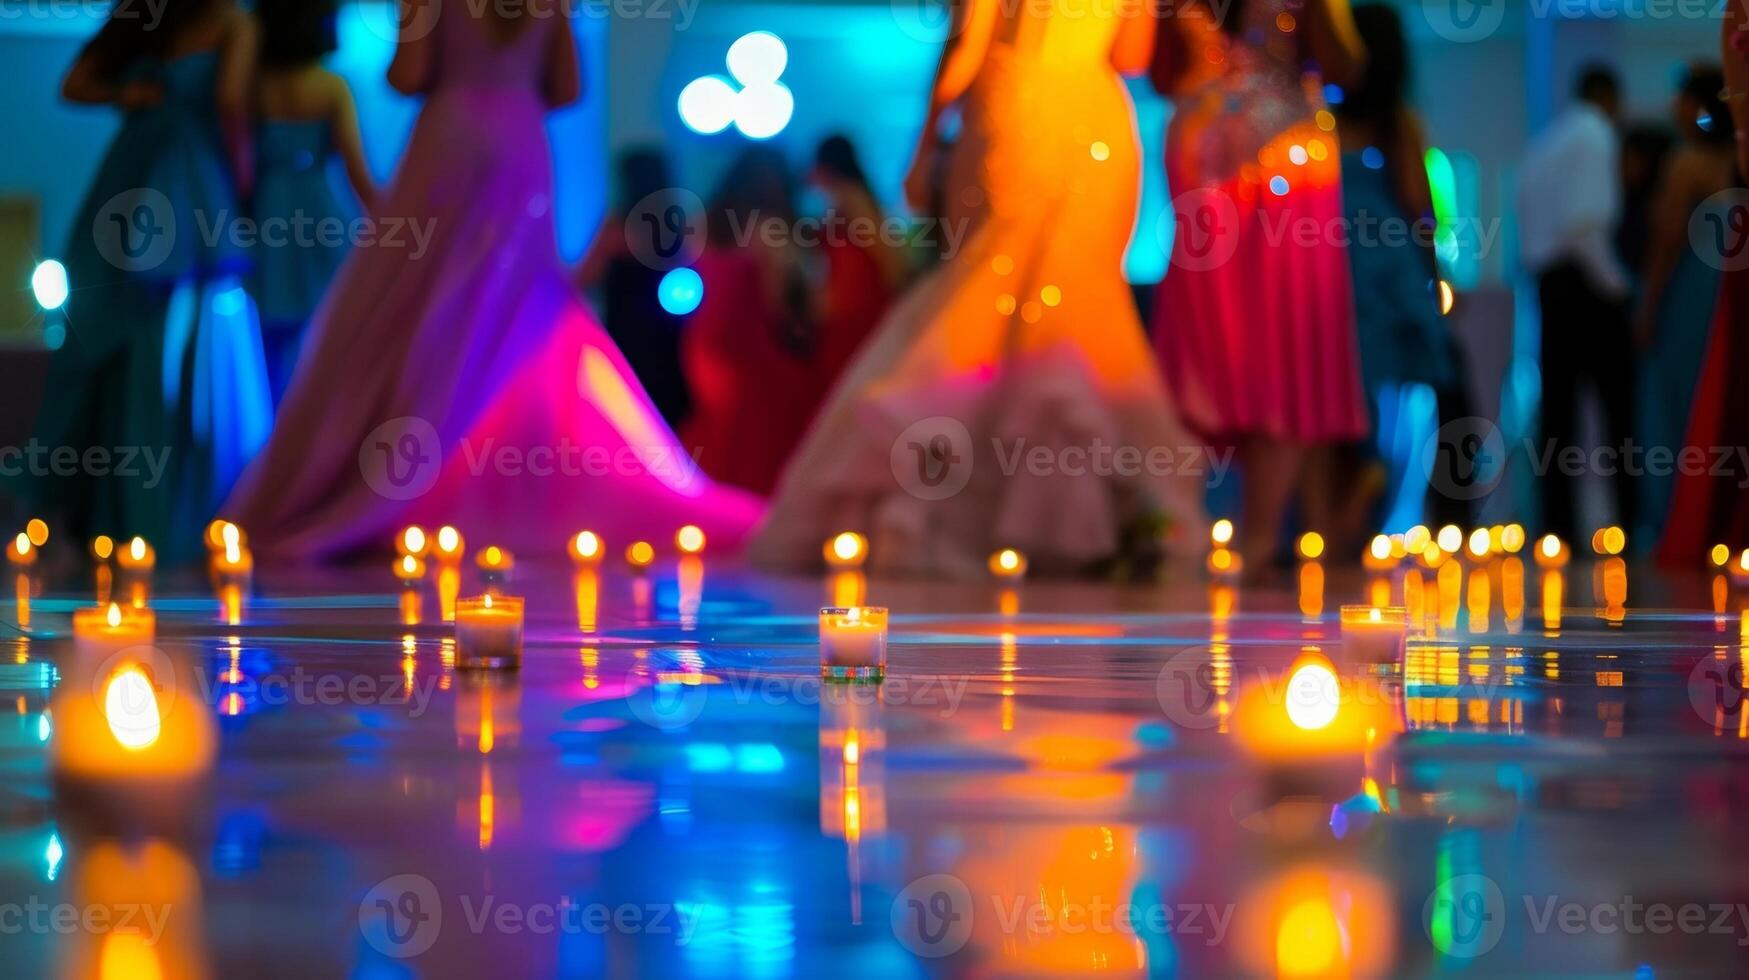 el parpadeando llamas de el velas iluminar el danza piso destacando el vibrante colores de el estudiantes atuendo. 2d plano dibujos animados foto